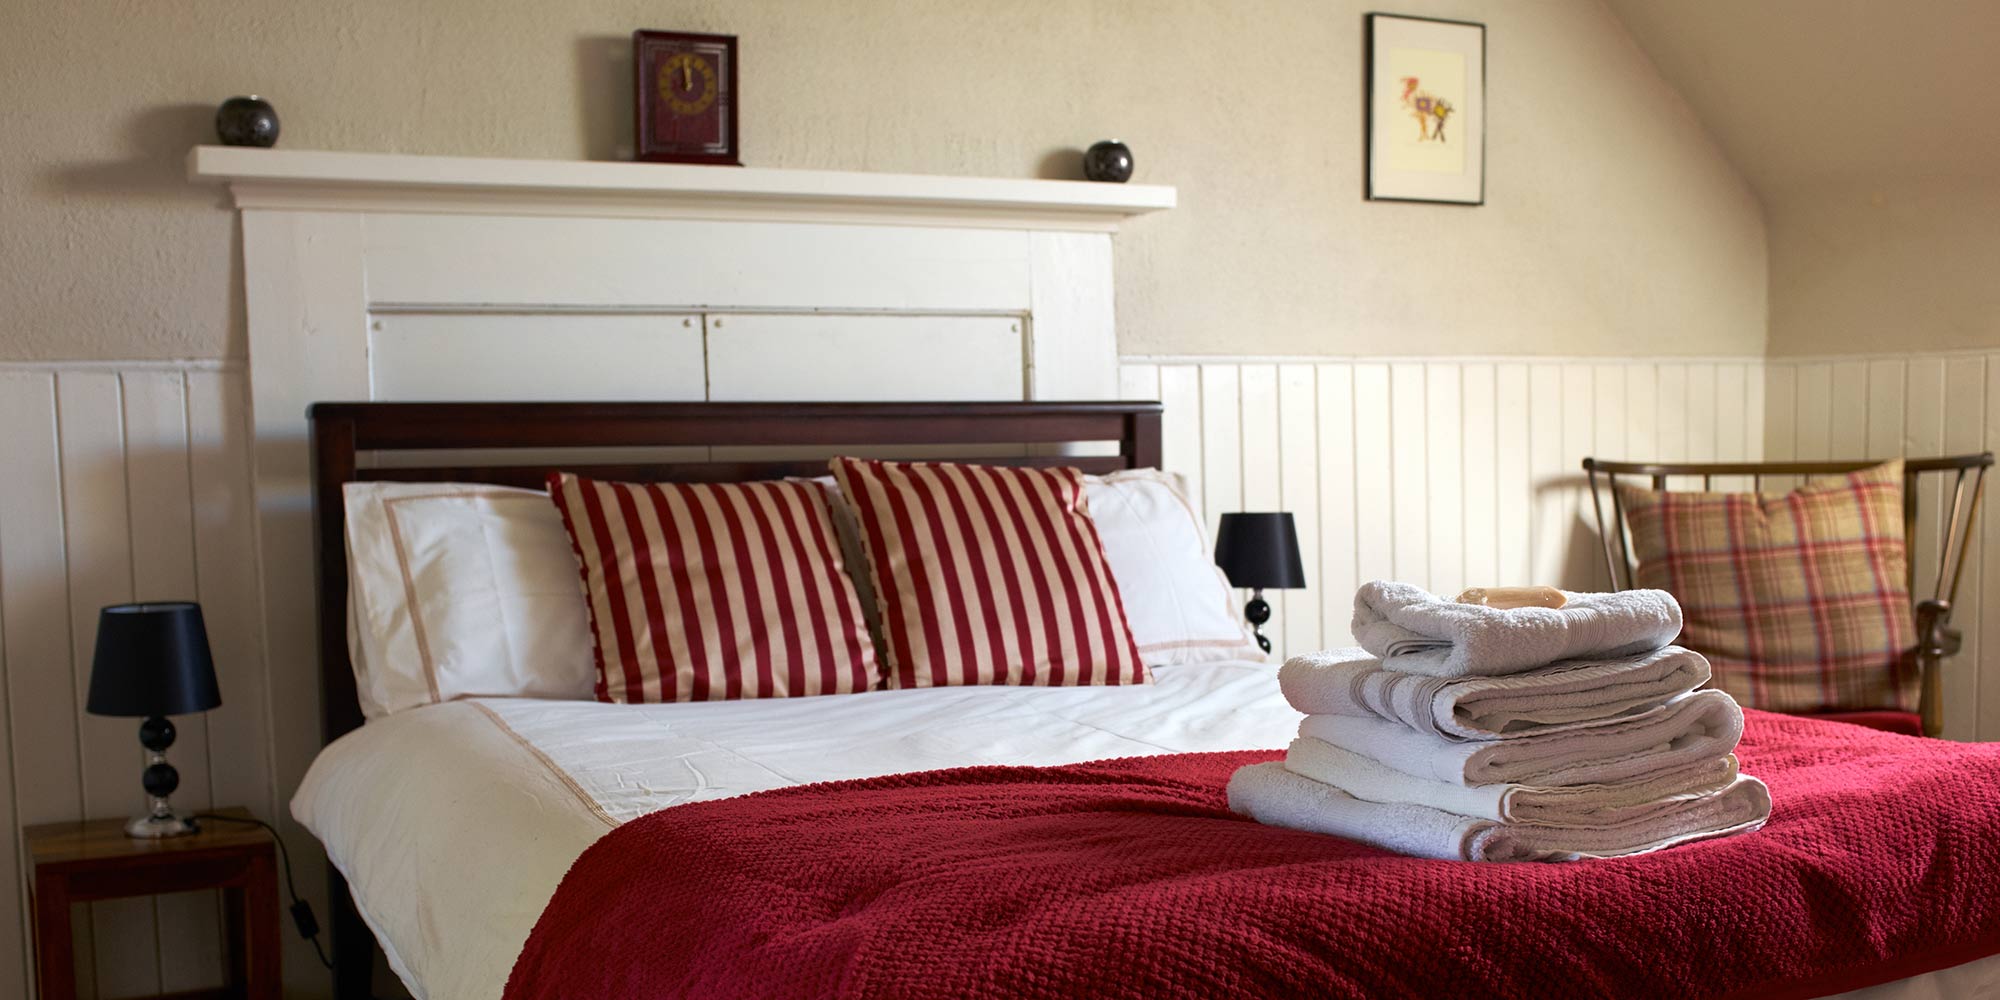 Bedroom furnished by Darrel Else (Furnishers) Ltd